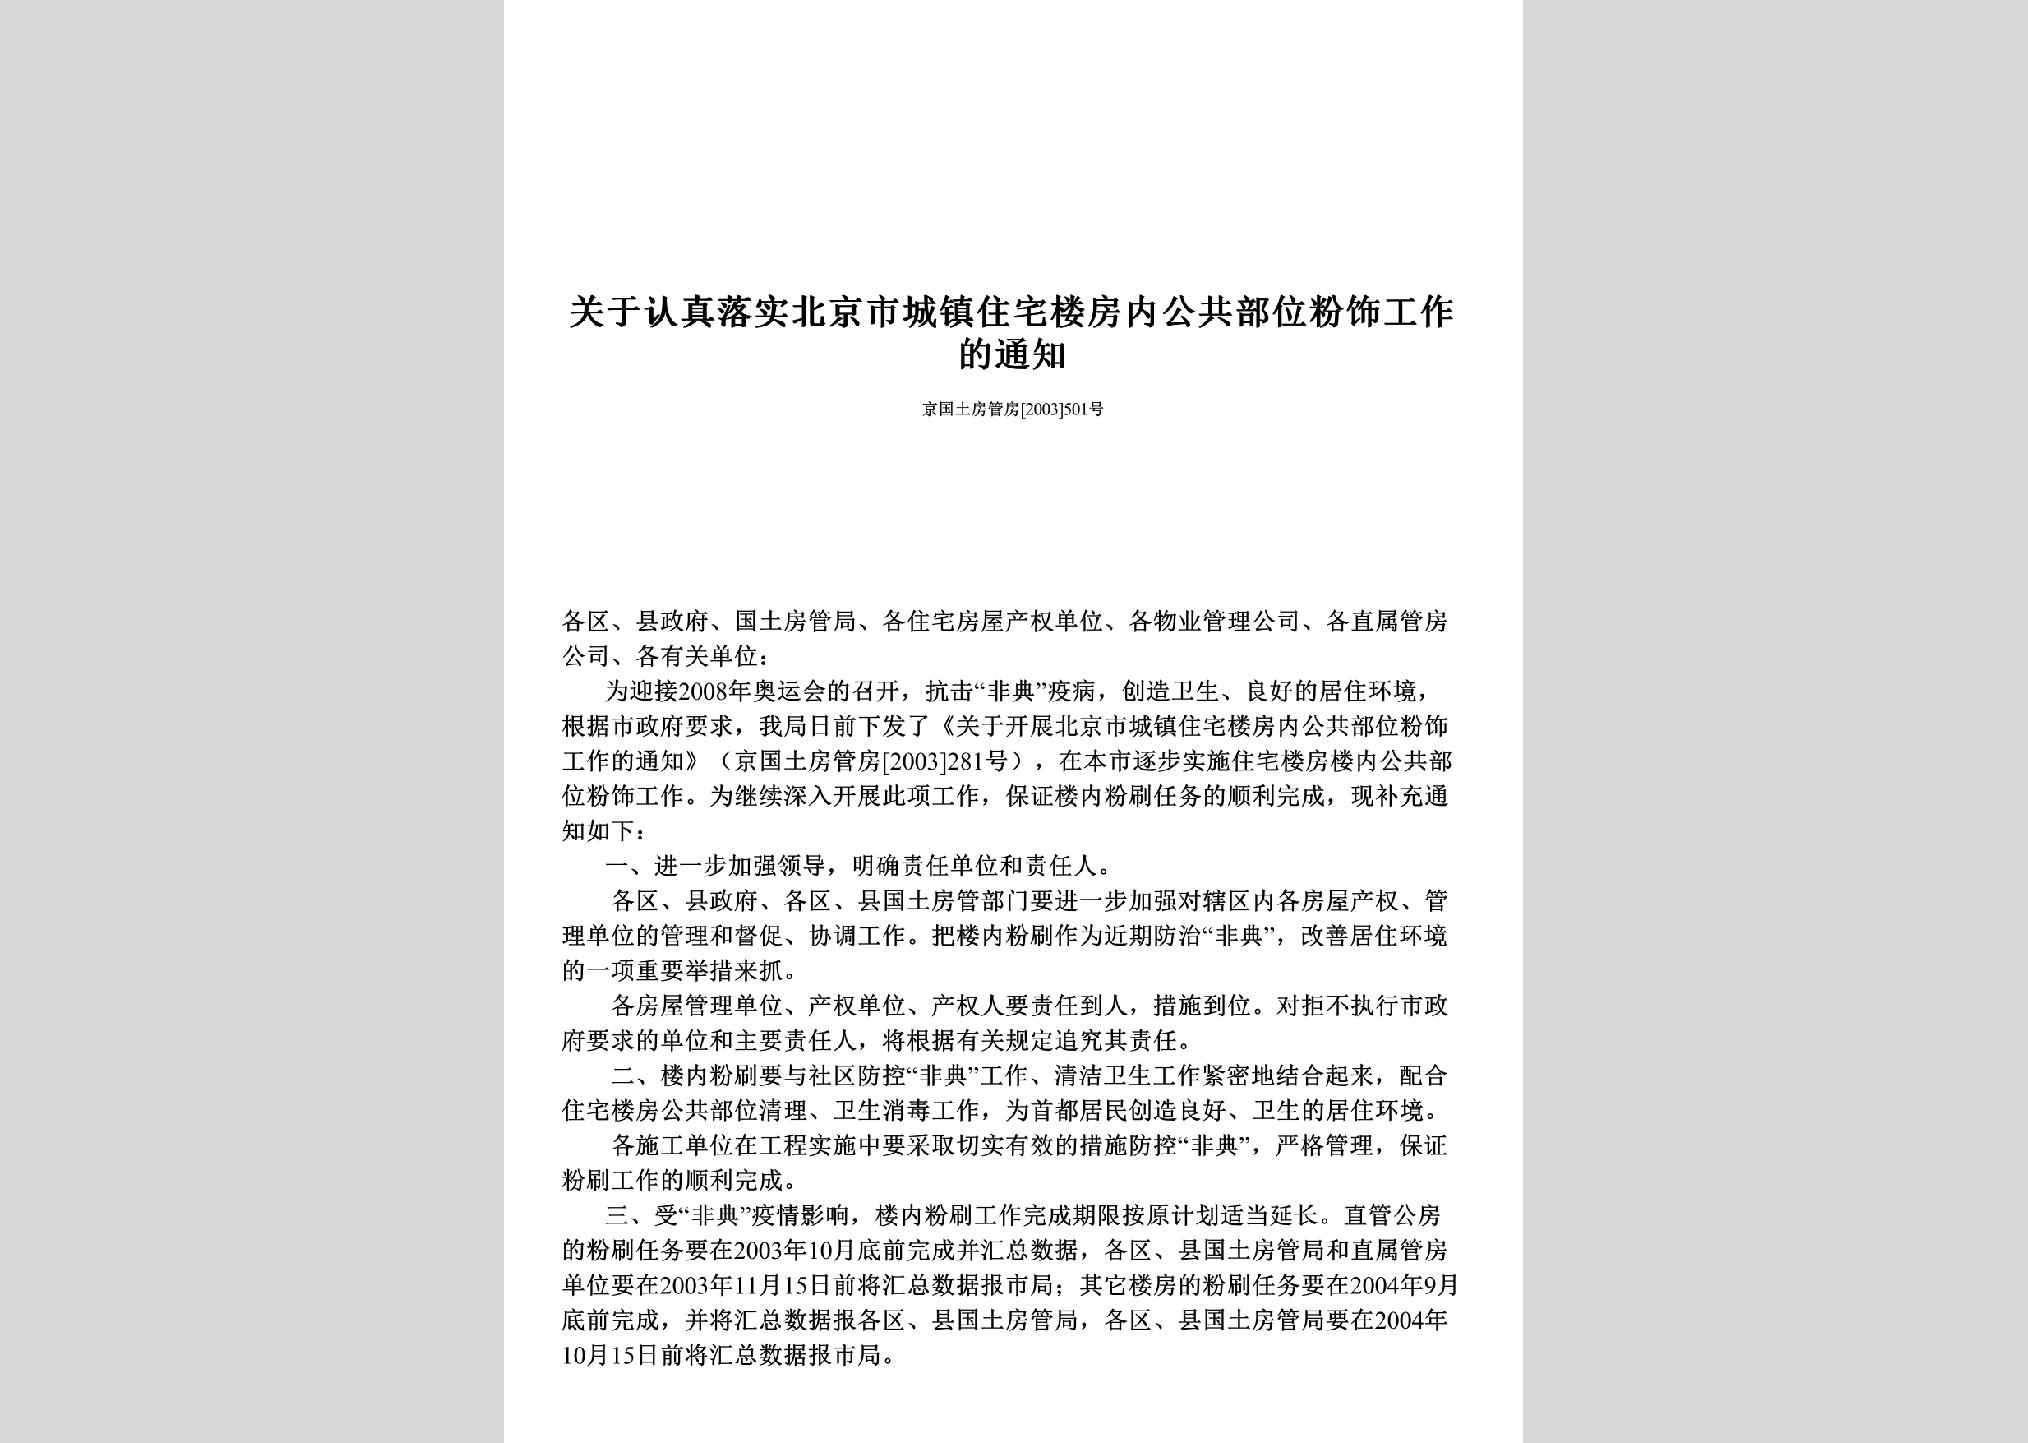 京国土房管房[2003]501号：关于认真落实北京市城镇住宅楼房内公共部位粉饰工作的通知